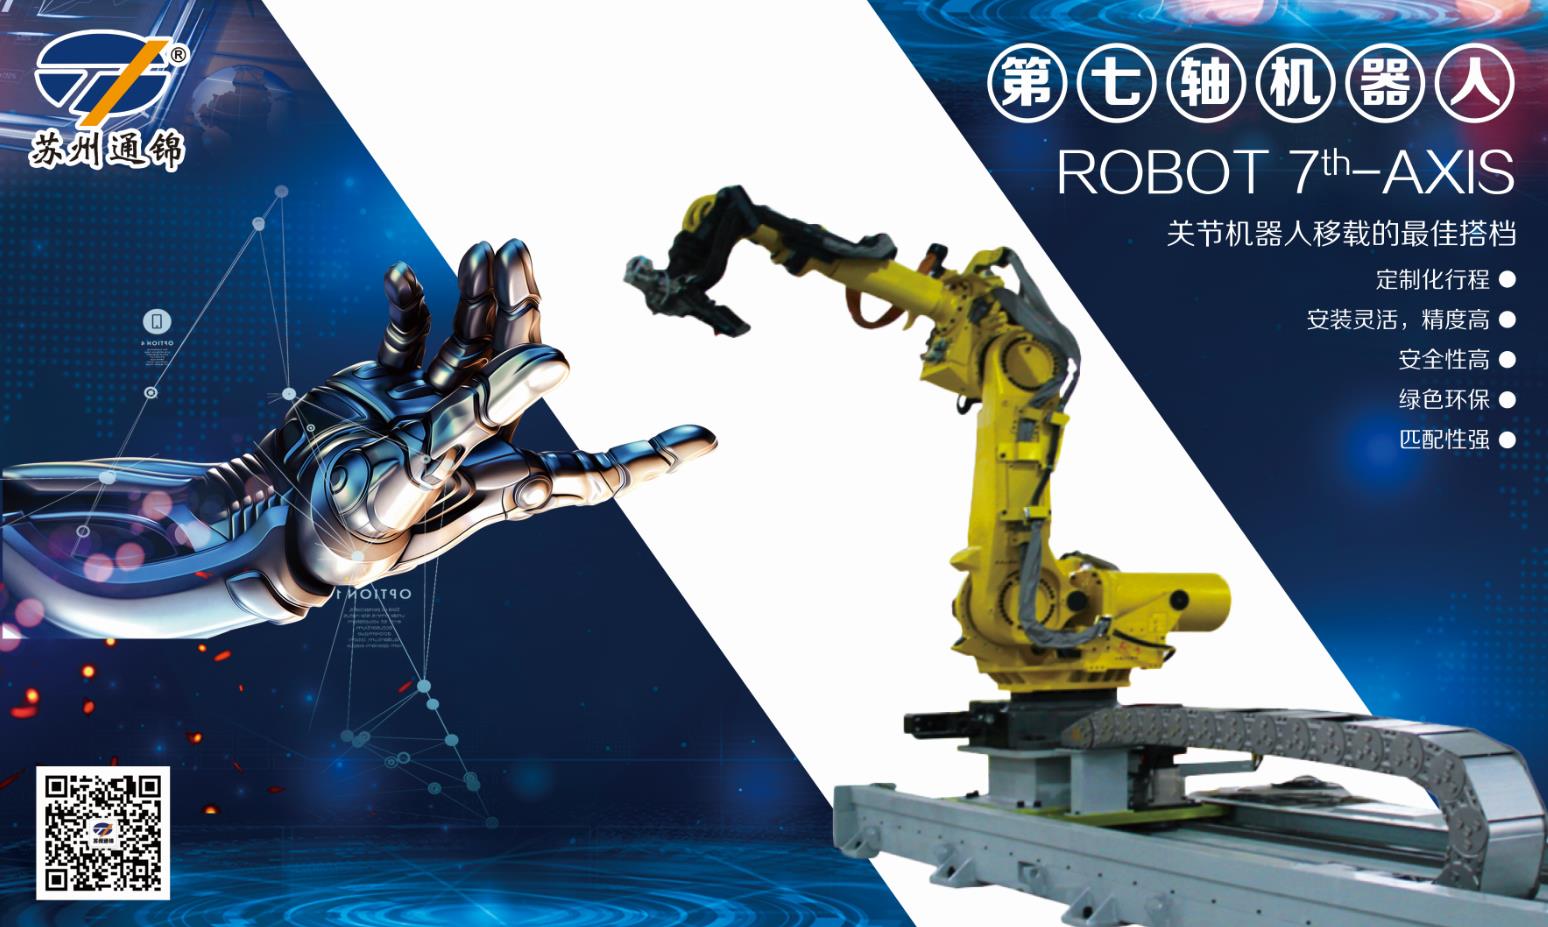 【展會專欄】2019中國工博會機器人展，我們蓄勢待發！